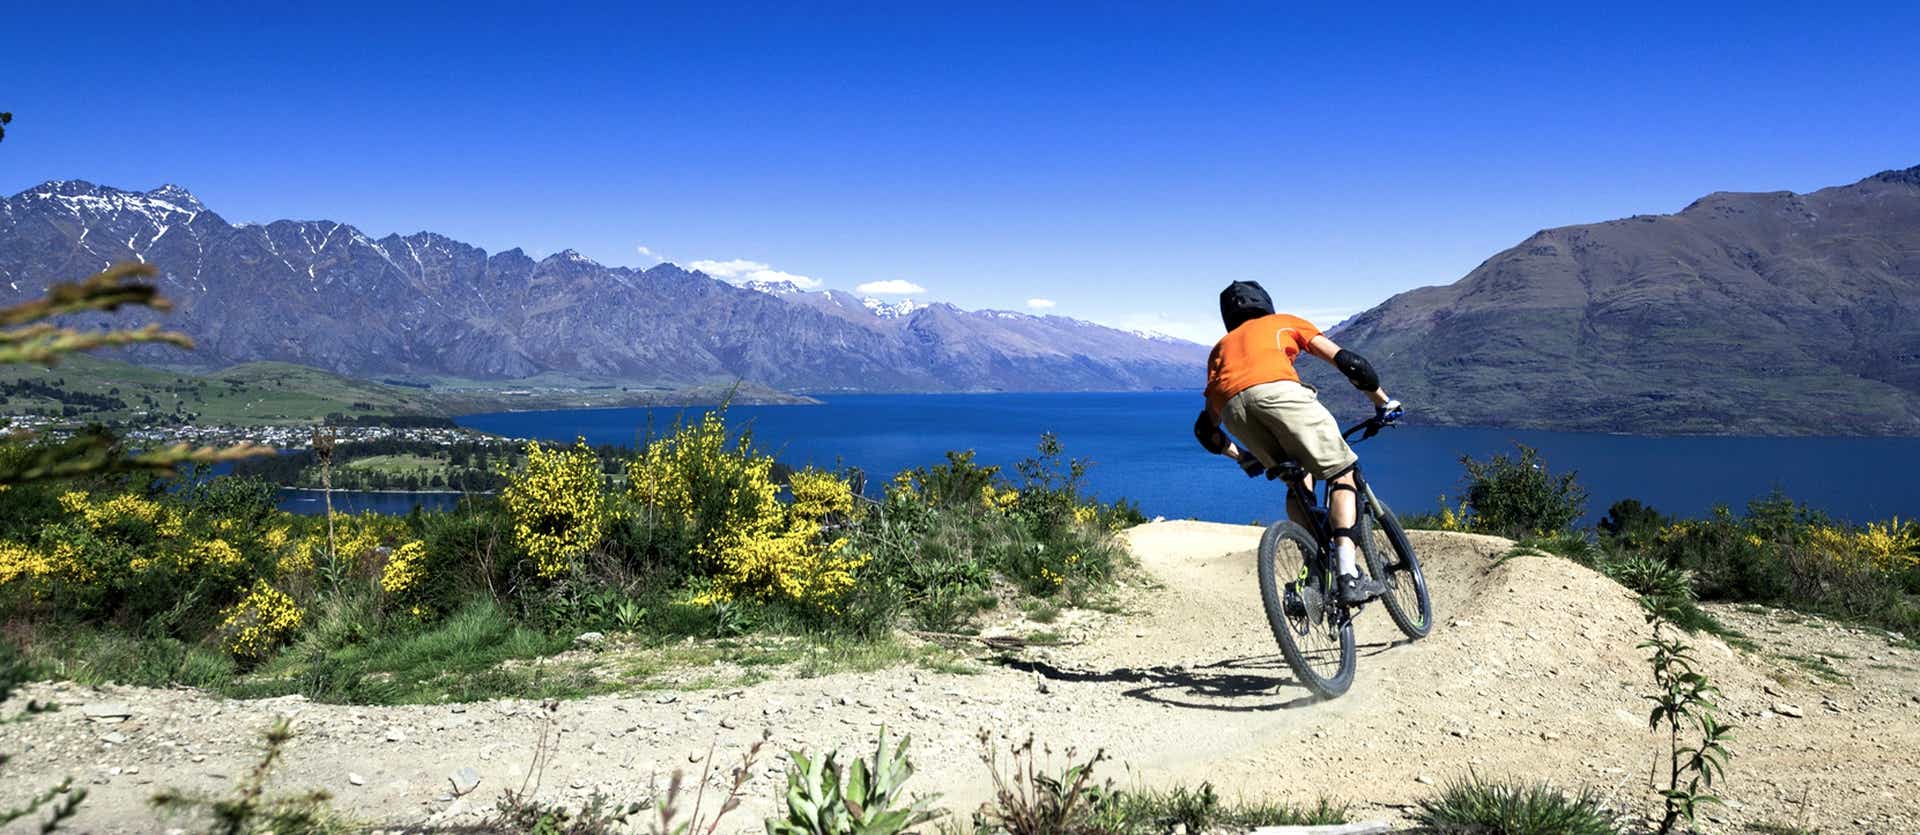 Mountain Biking <span class="iconos separador"></span> Queenstown <span class="iconos separador"></span> New Zealand